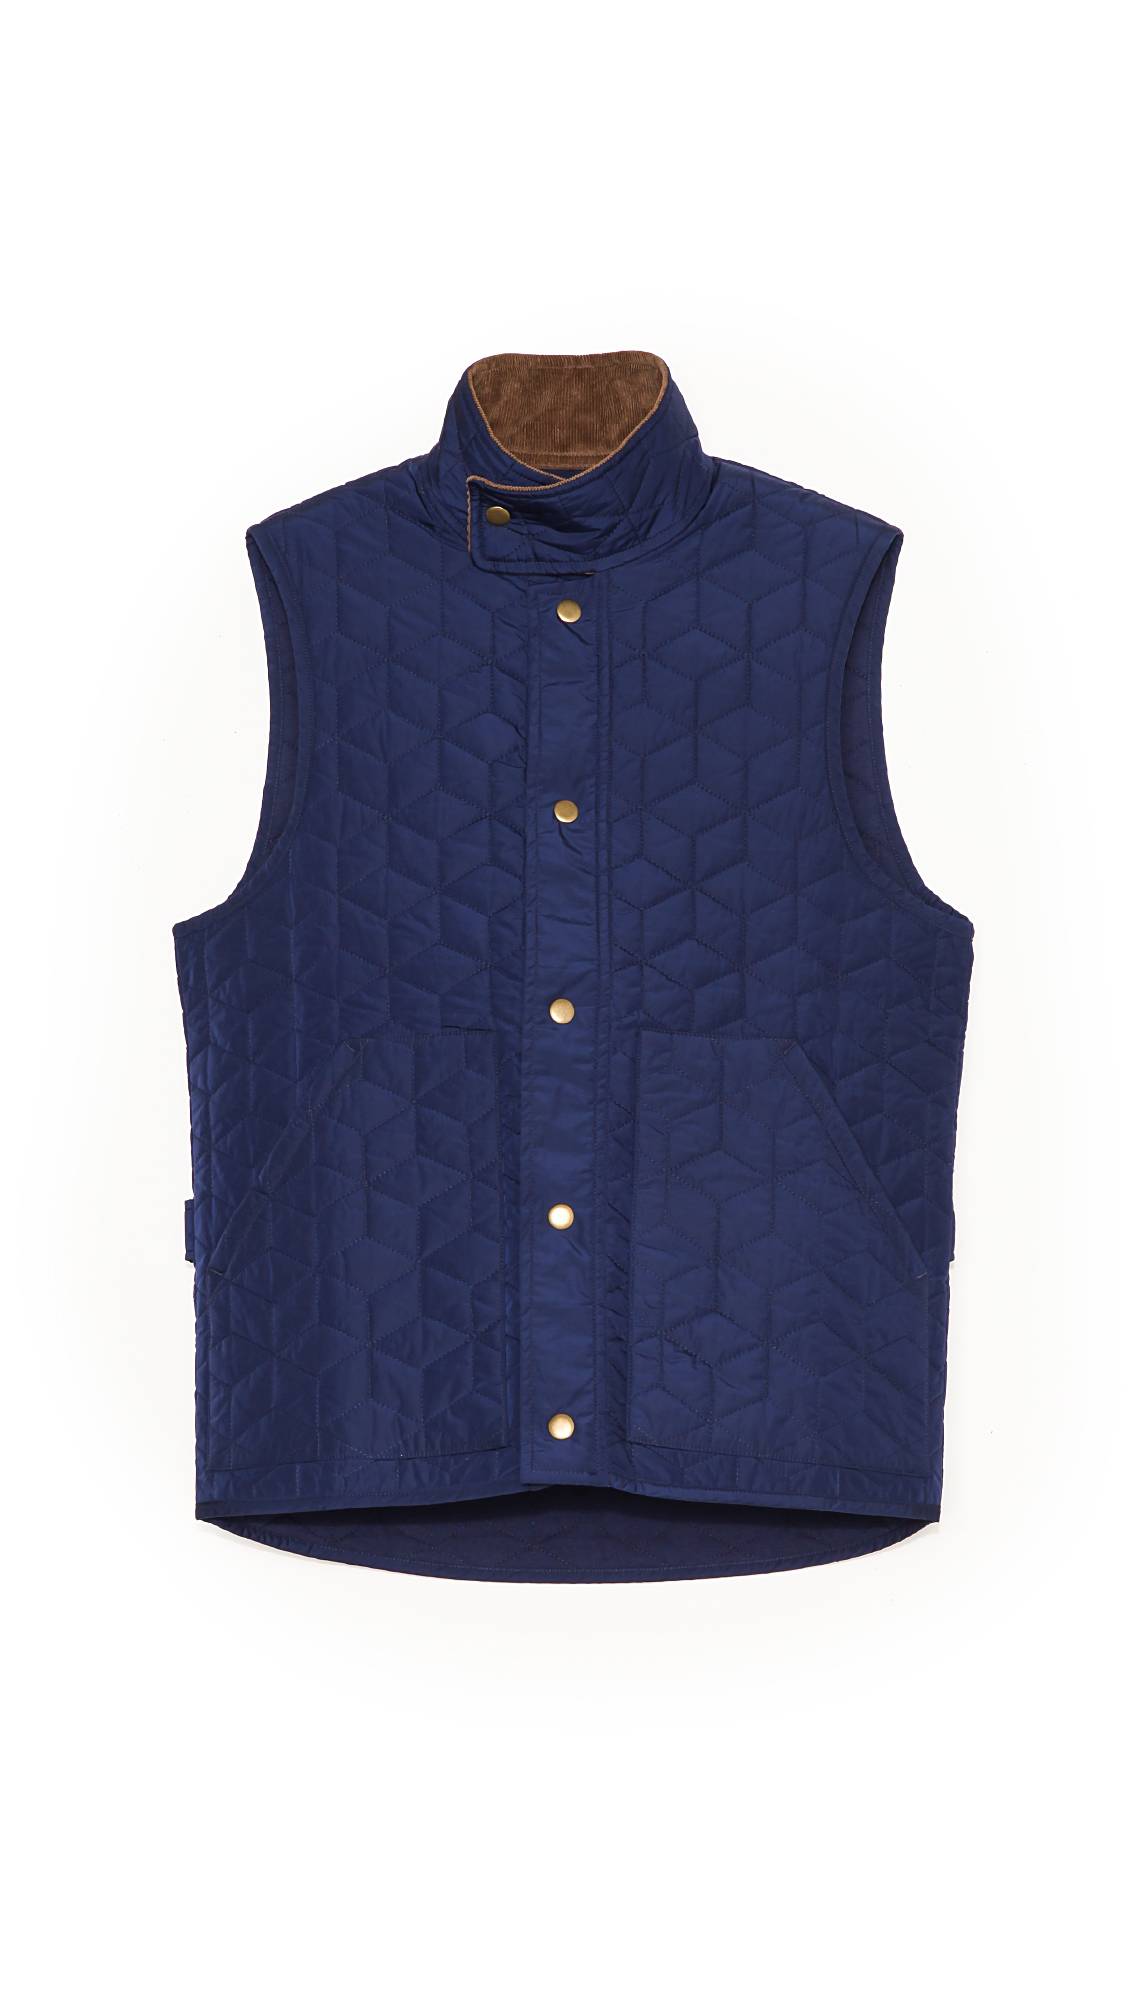 Lyst - Jack Spade Herington Vest in Blue for Men